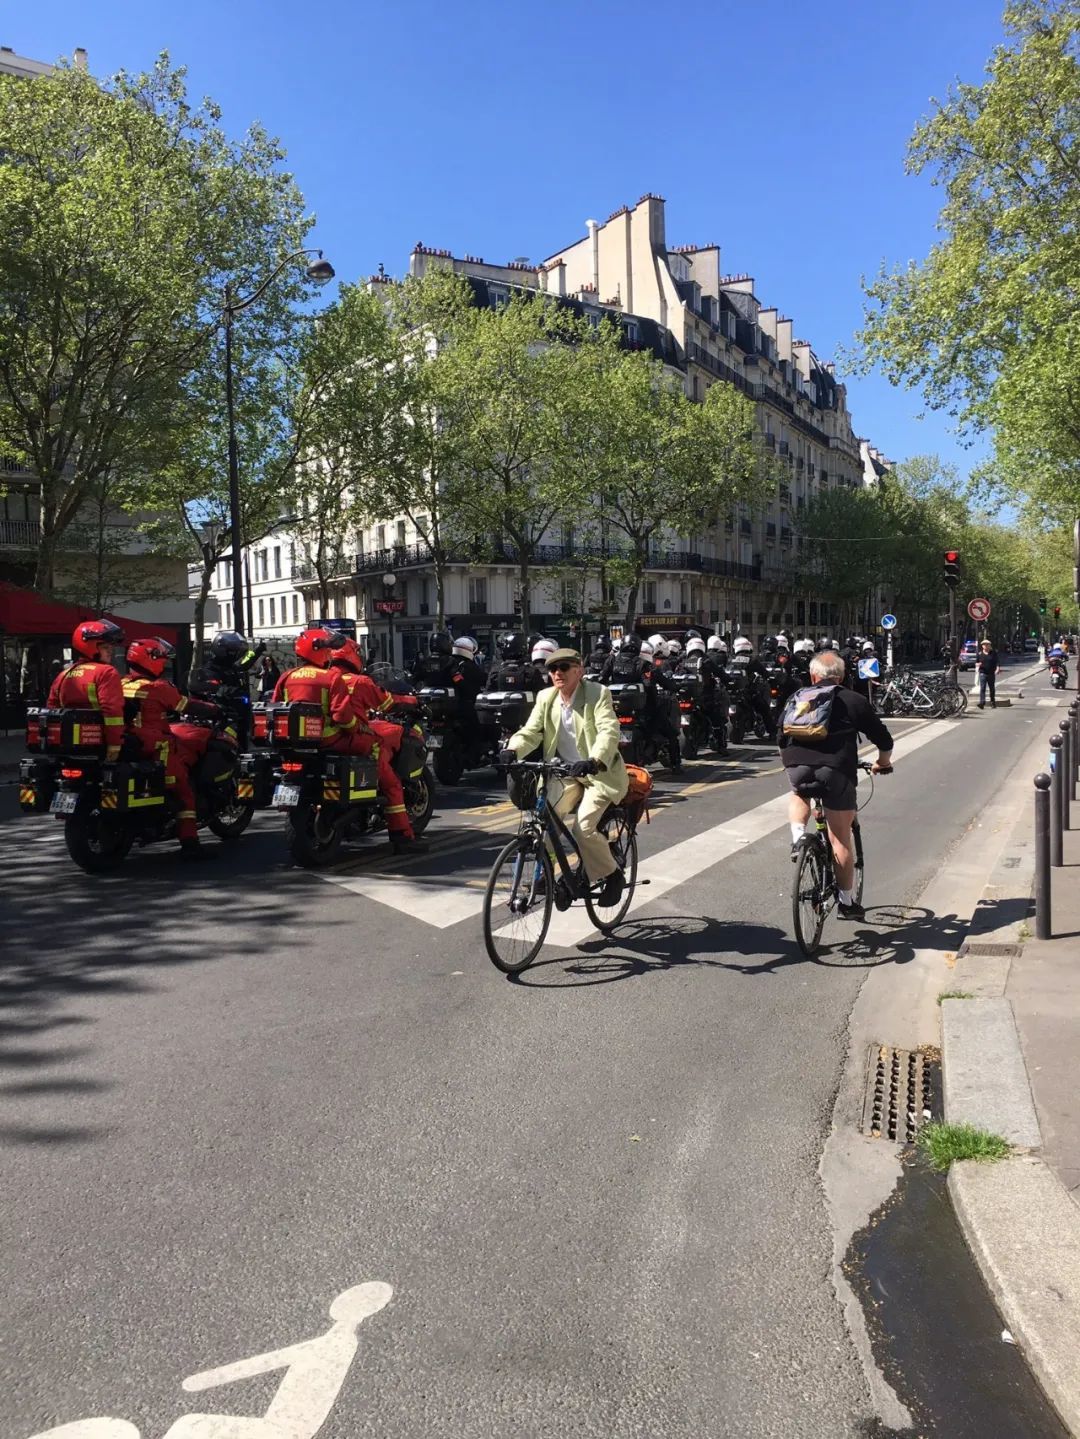 ▲ 巴黎的游行被警方列为“高风险”，因为示威人群中可能混入包括黄马甲、极左无政府主义者等。图为警察在游行现场维持秩序。（推特账号@ariah2）